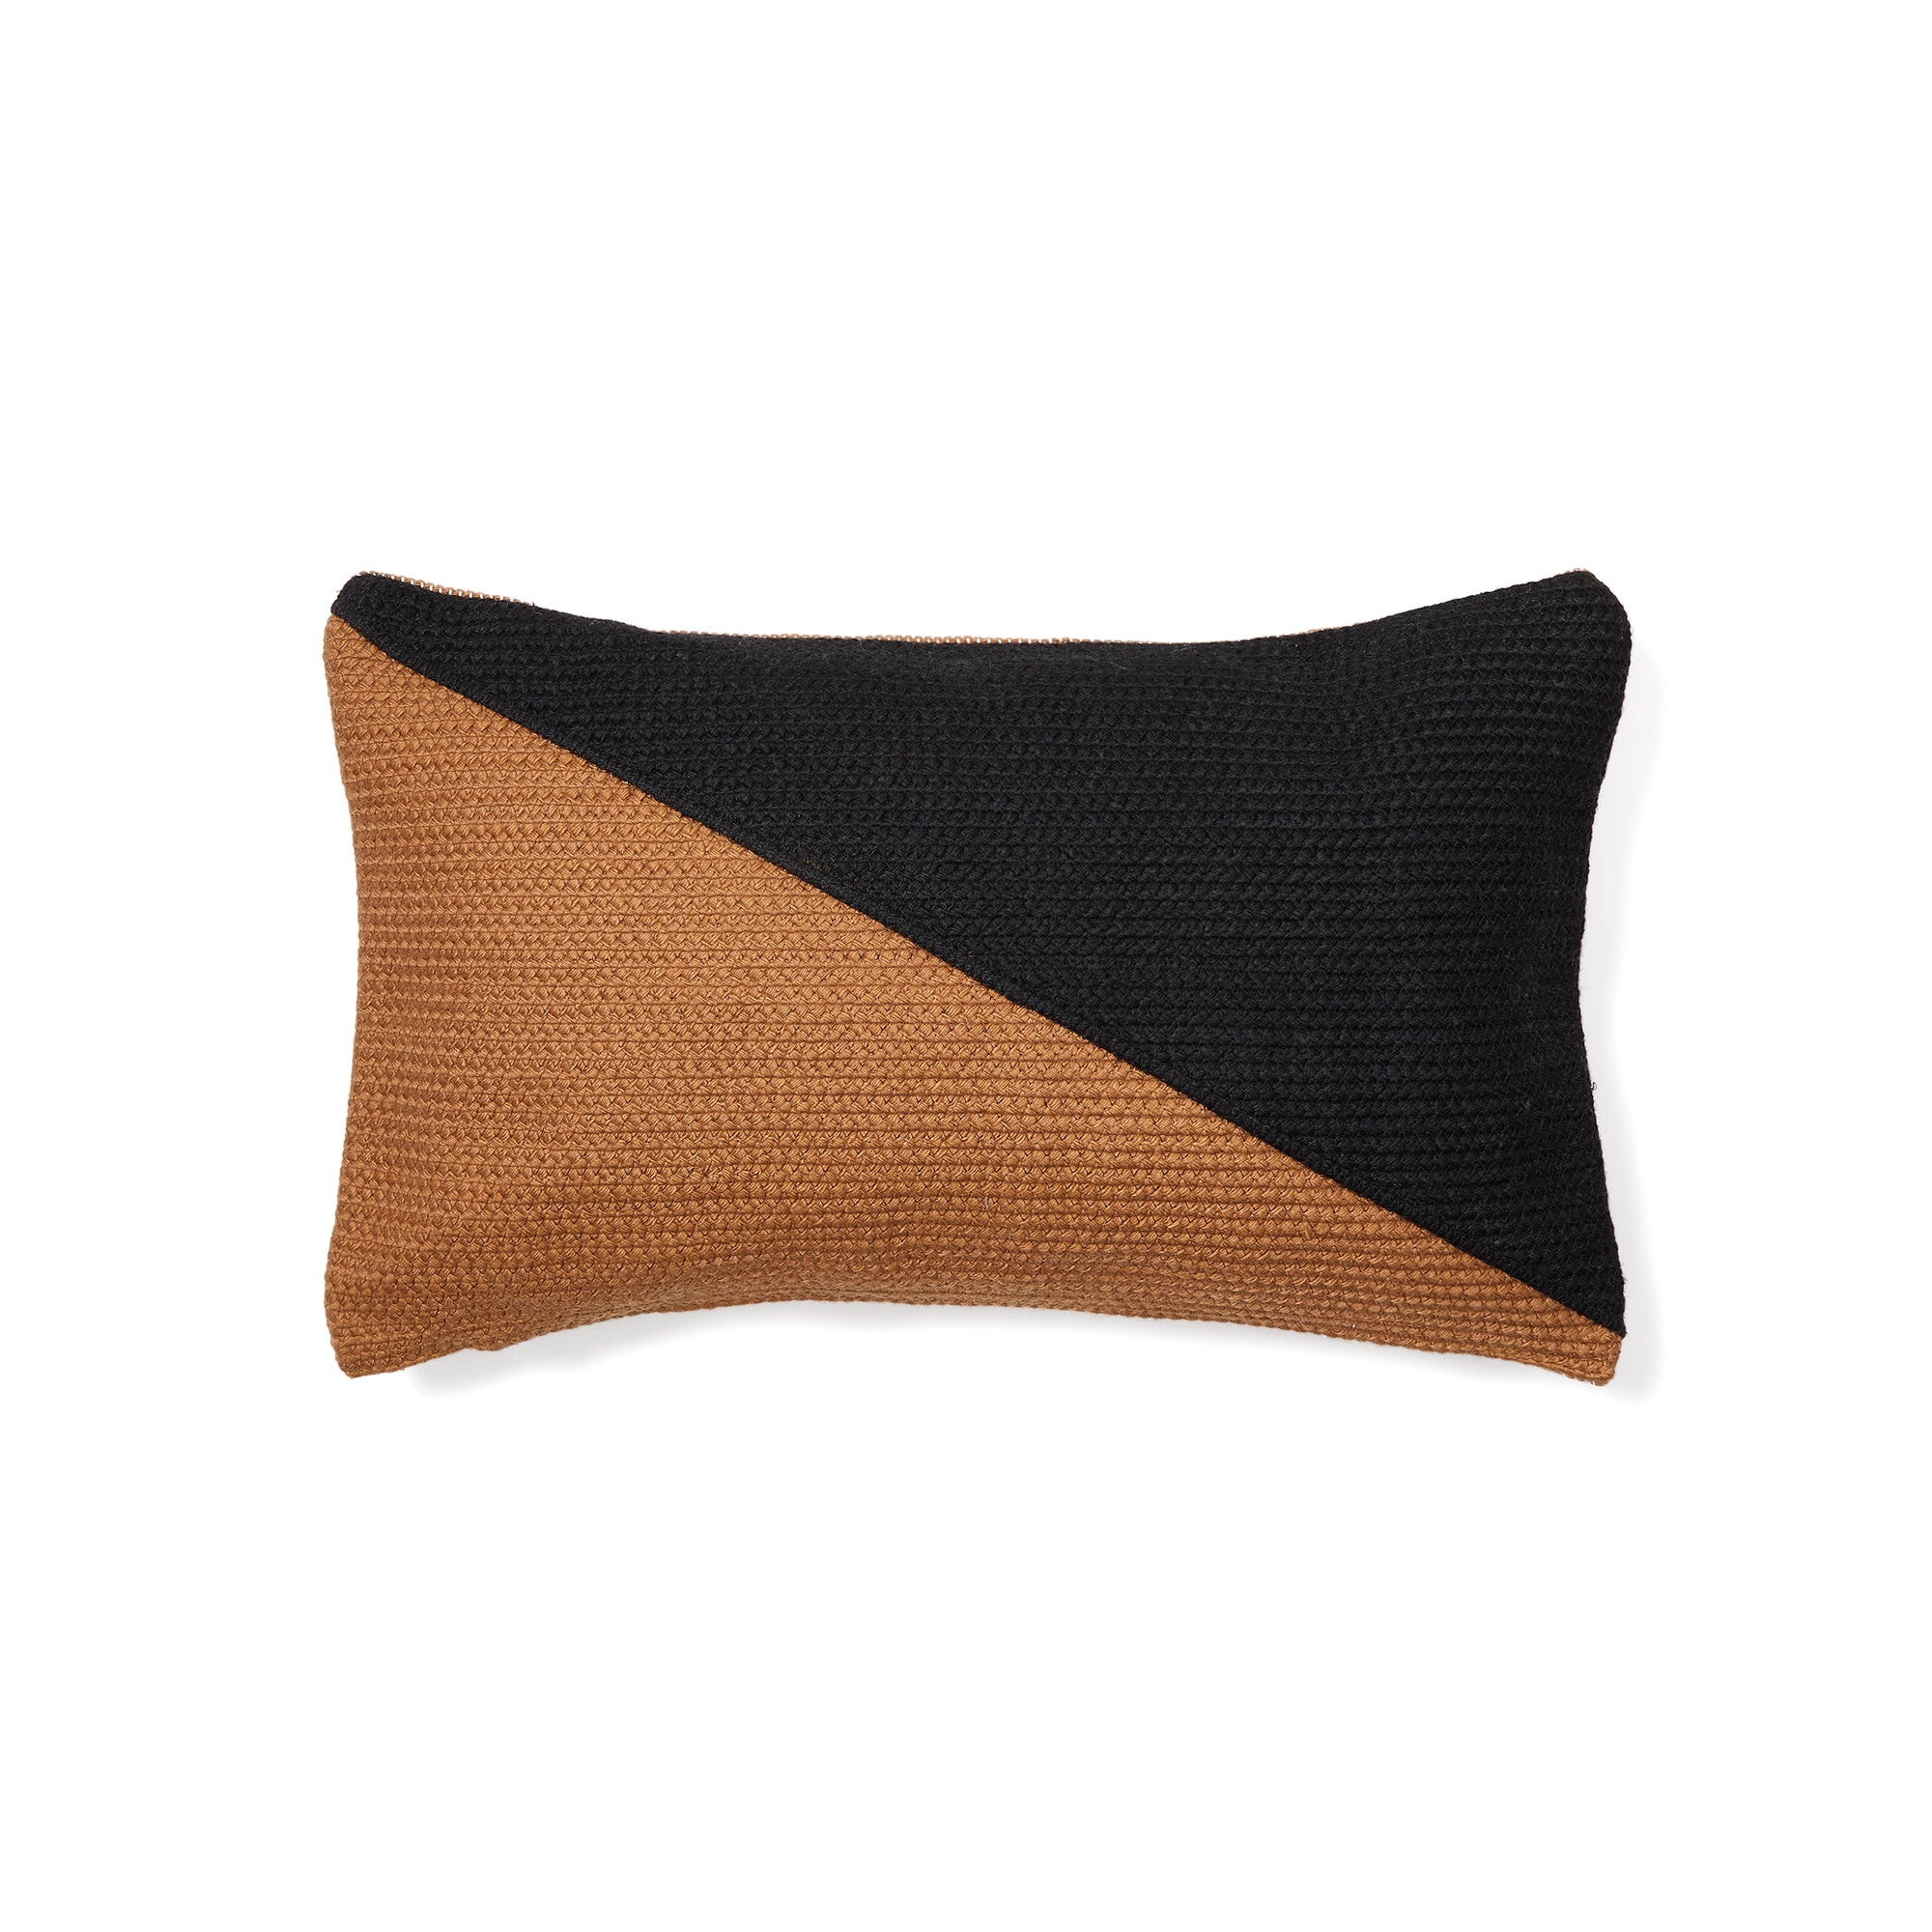 Saigua cushion cover with diagonal stripes, black and brown, 100% PET, 30 x 50 cm